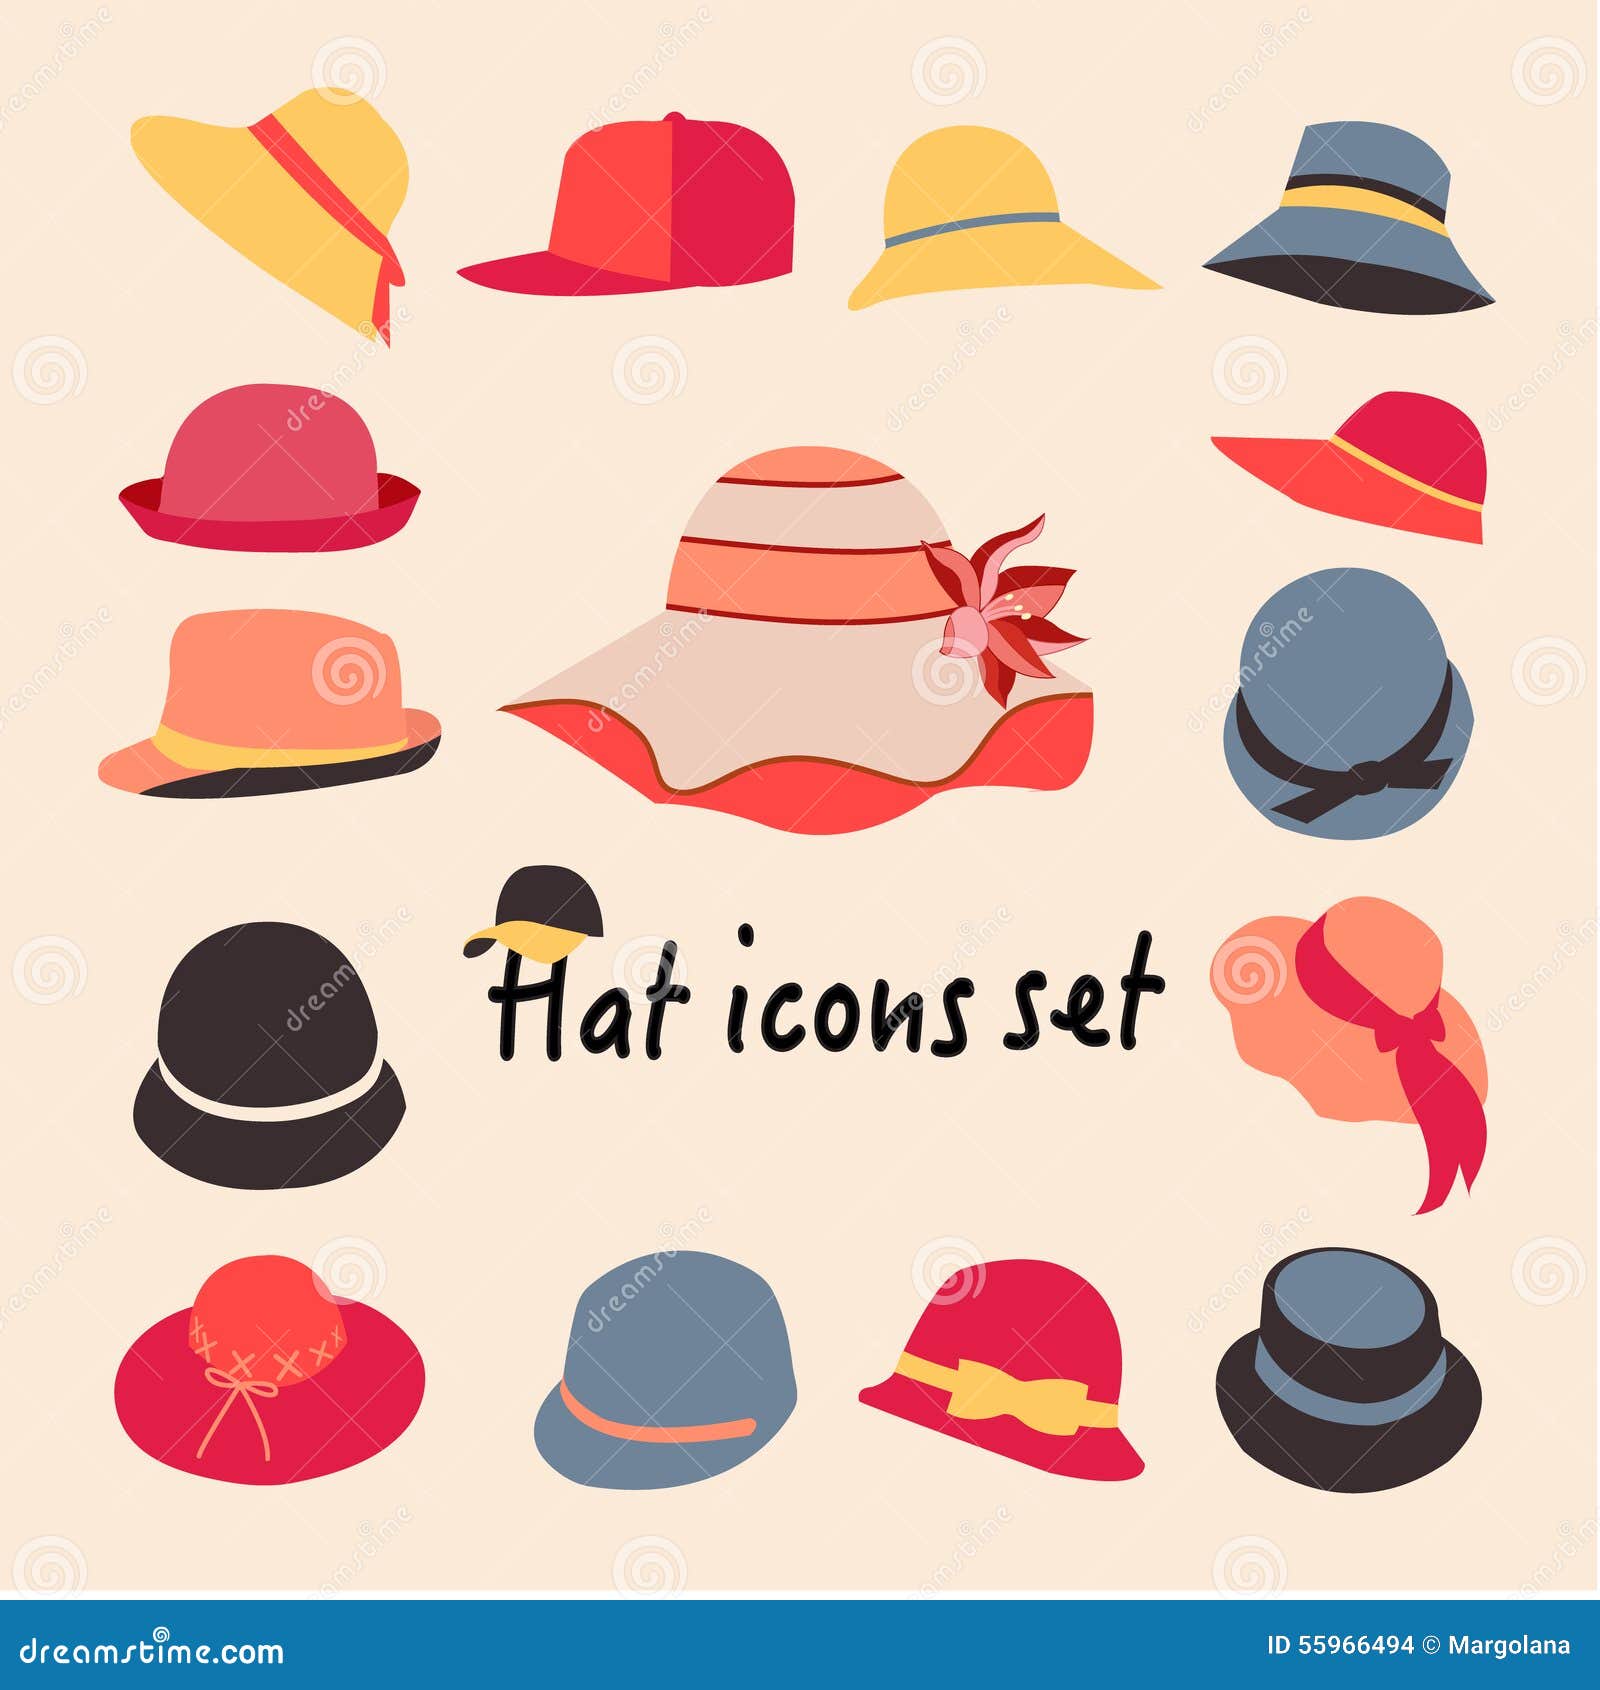 Ilustración con diferentes tipos de sombreros para hombres